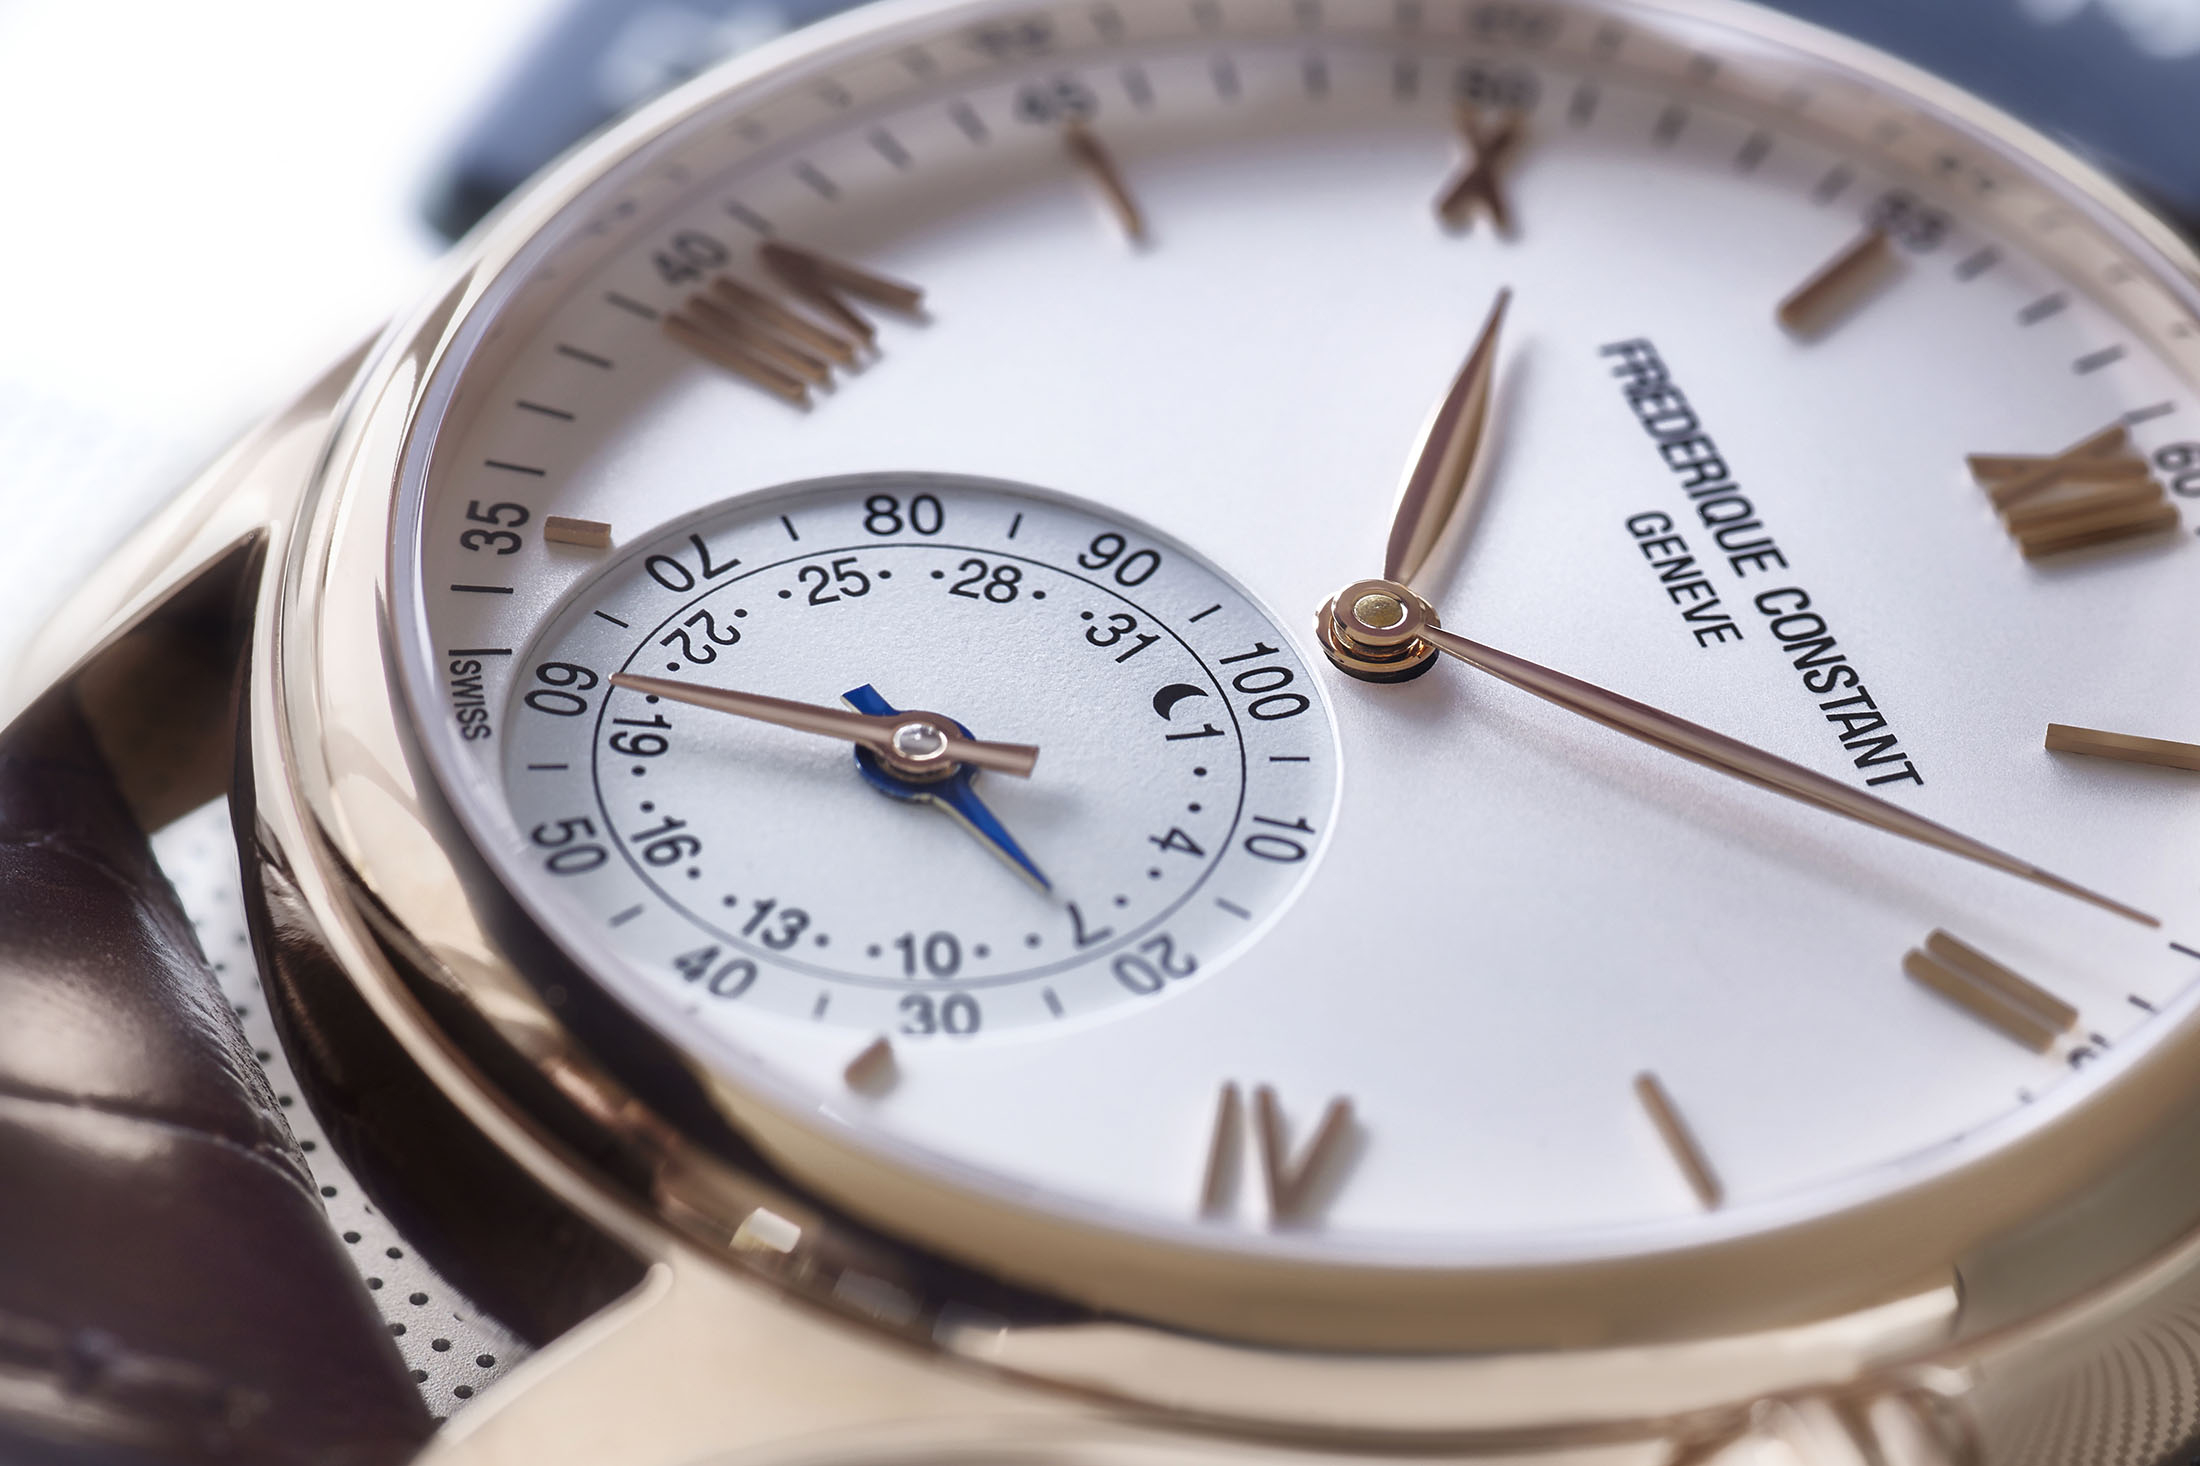 Сайт производителя часов. Frederique constant Horological SMARTWATCH. Часовые фирмы Швейцарии. Швейцарский Часовщик. Производство часов.